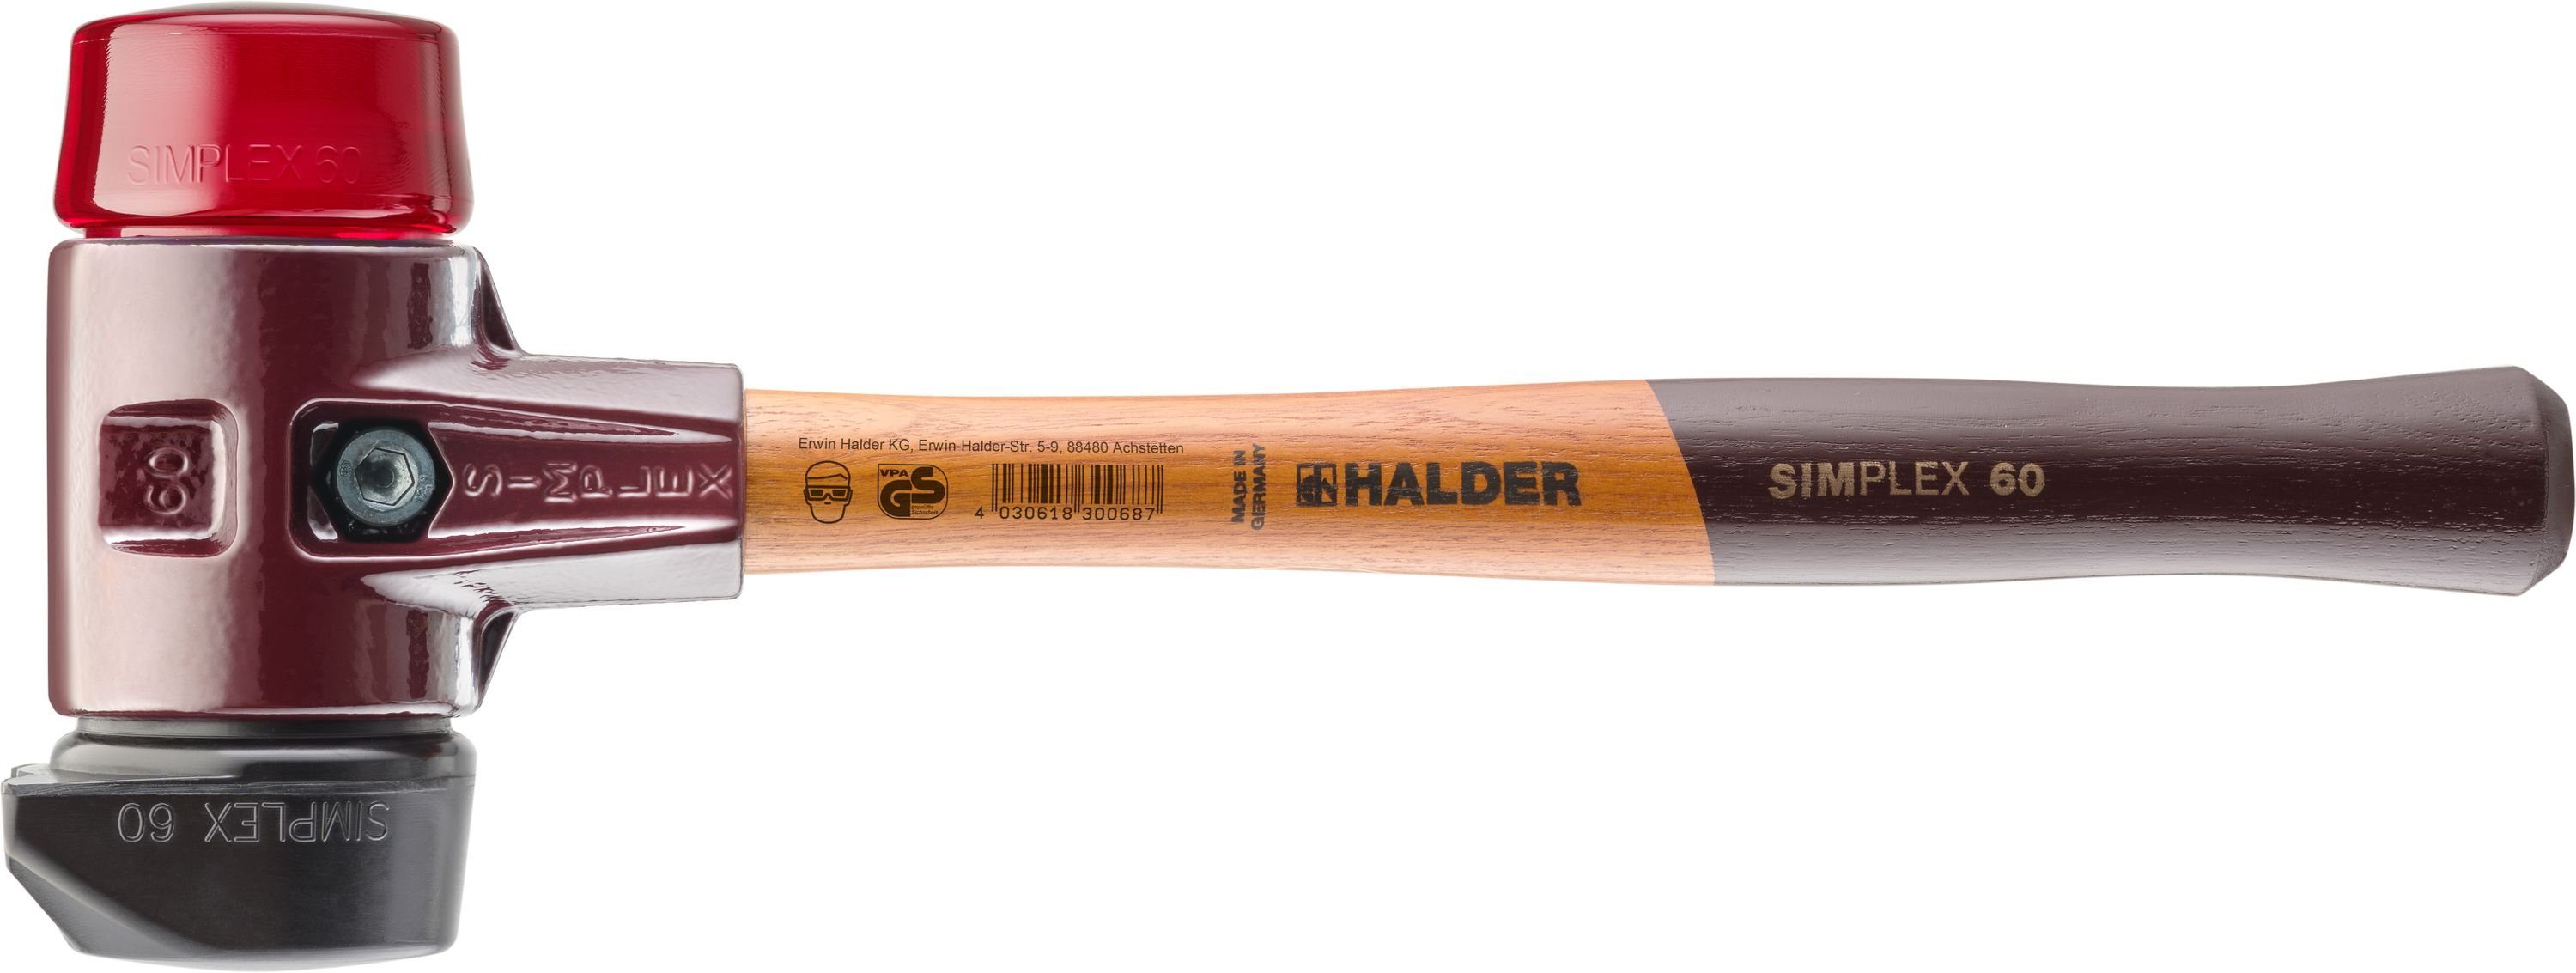 Halder KG Hammer - mittelhart 2 Simplex-Schonhammer mit 60mm und Gummi Standfuß 3026.260 Halder hart Plastik & Schlageinsätzen